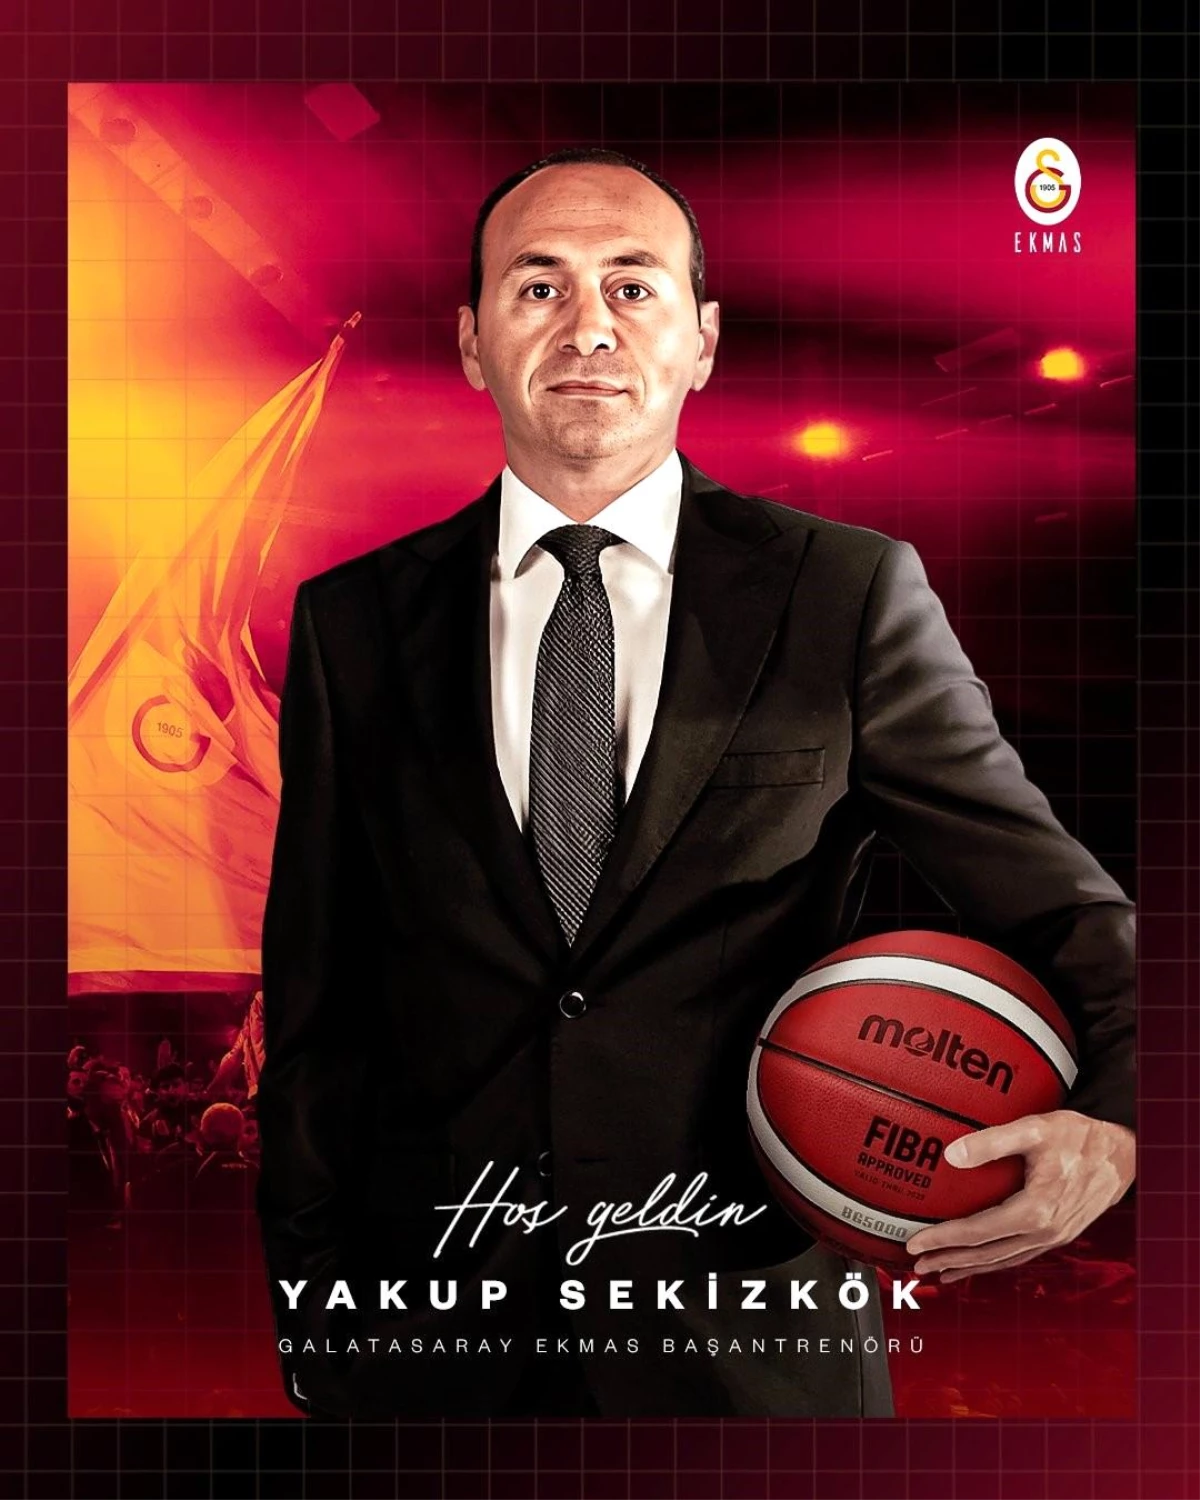 Galatasaray: "Erkek Basketbol Takımımız Galatasaray Ekmas, bu sezon başından itibaren Darüşşafaka Lassa Başantrenörü olarak görev yapan Yakup...